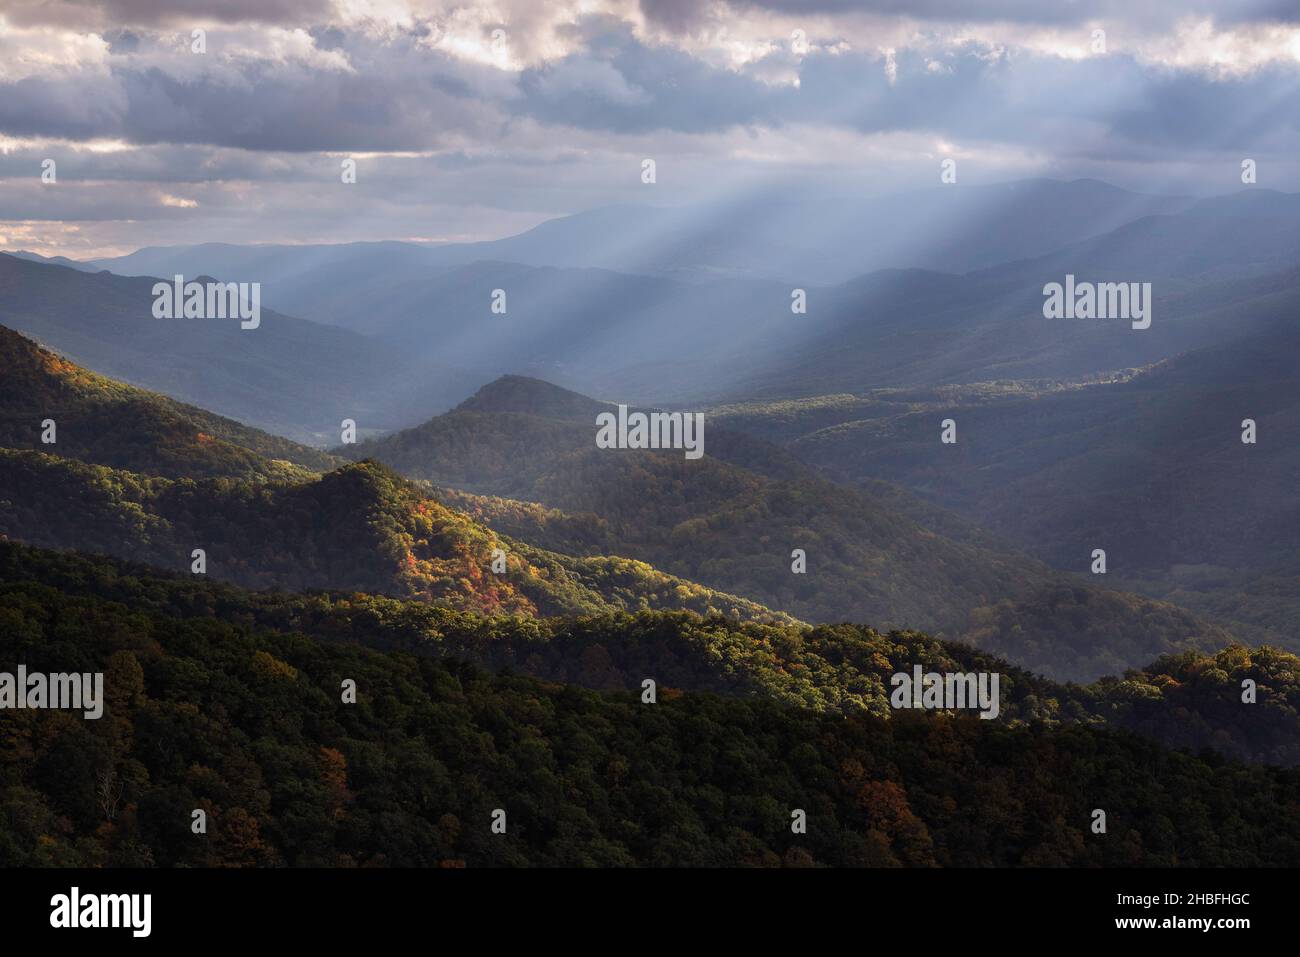 Rayos de luz crepusculares que brillan a través del Valle de North Fork en Virginia Occidental, iluminando algunos de los principios del otoño de color abajo. Foto de stock